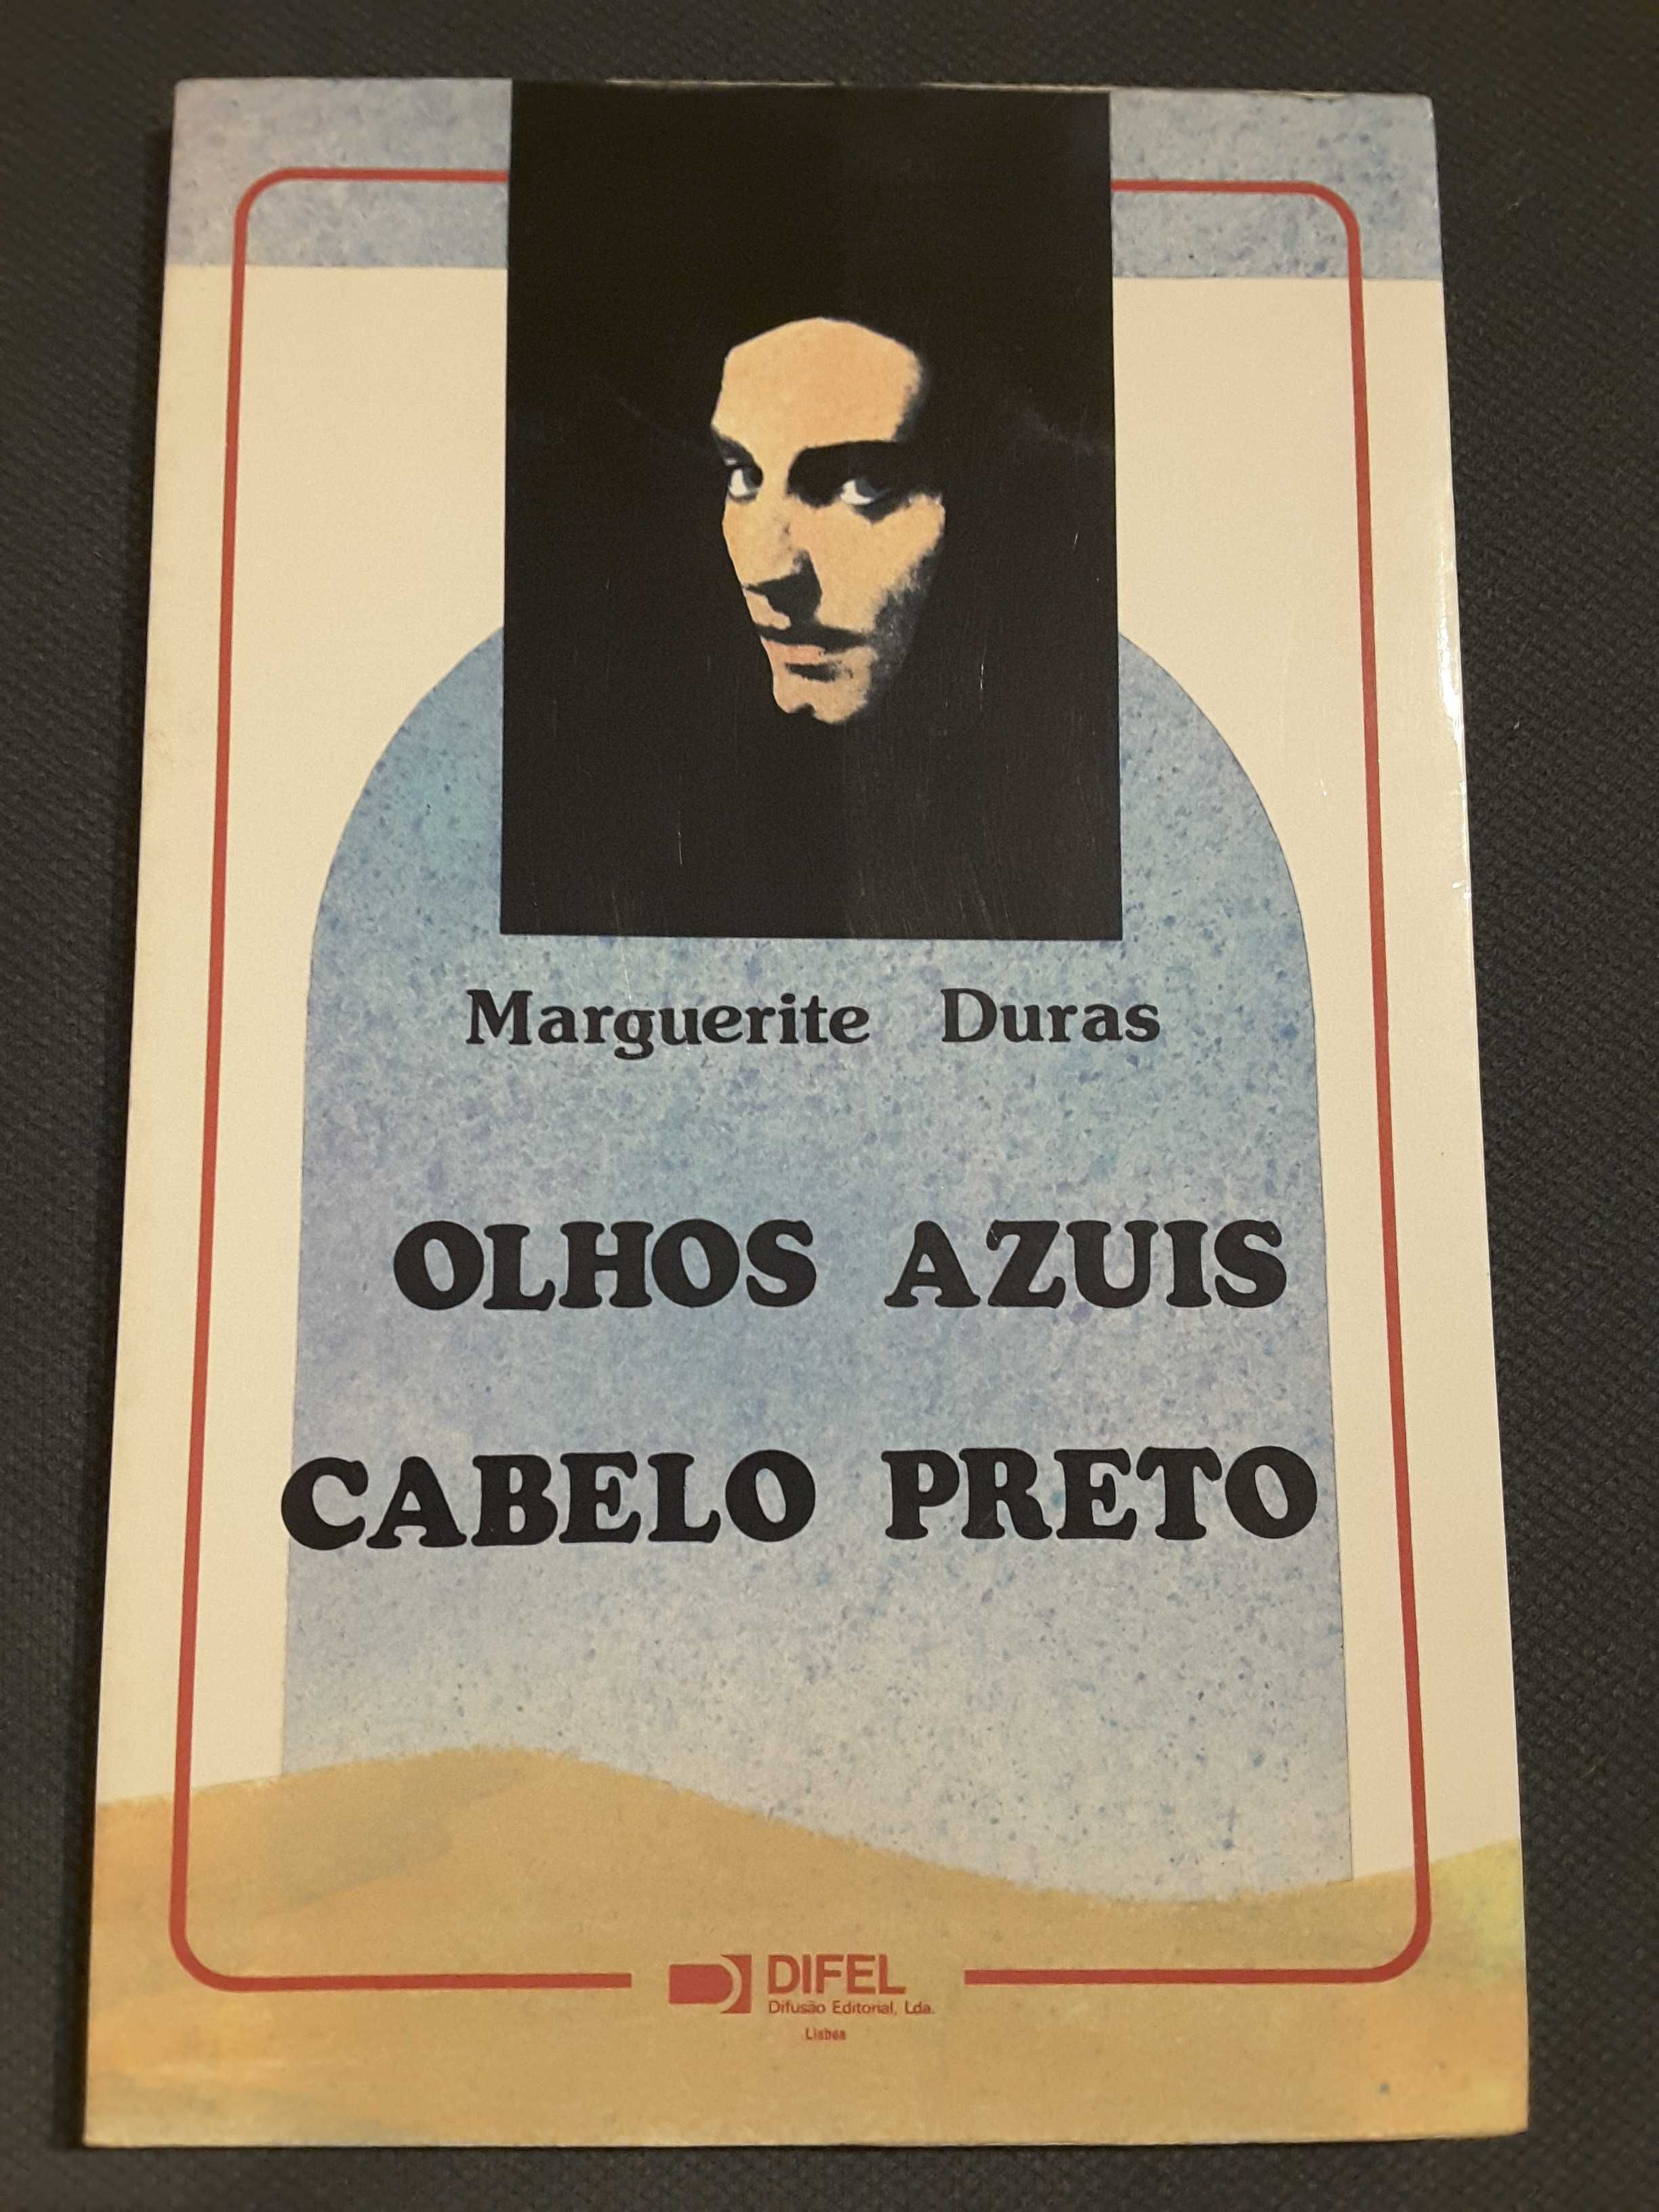 Marguerite Duras/ Marguerite Yourcenar/ Christine Garnier